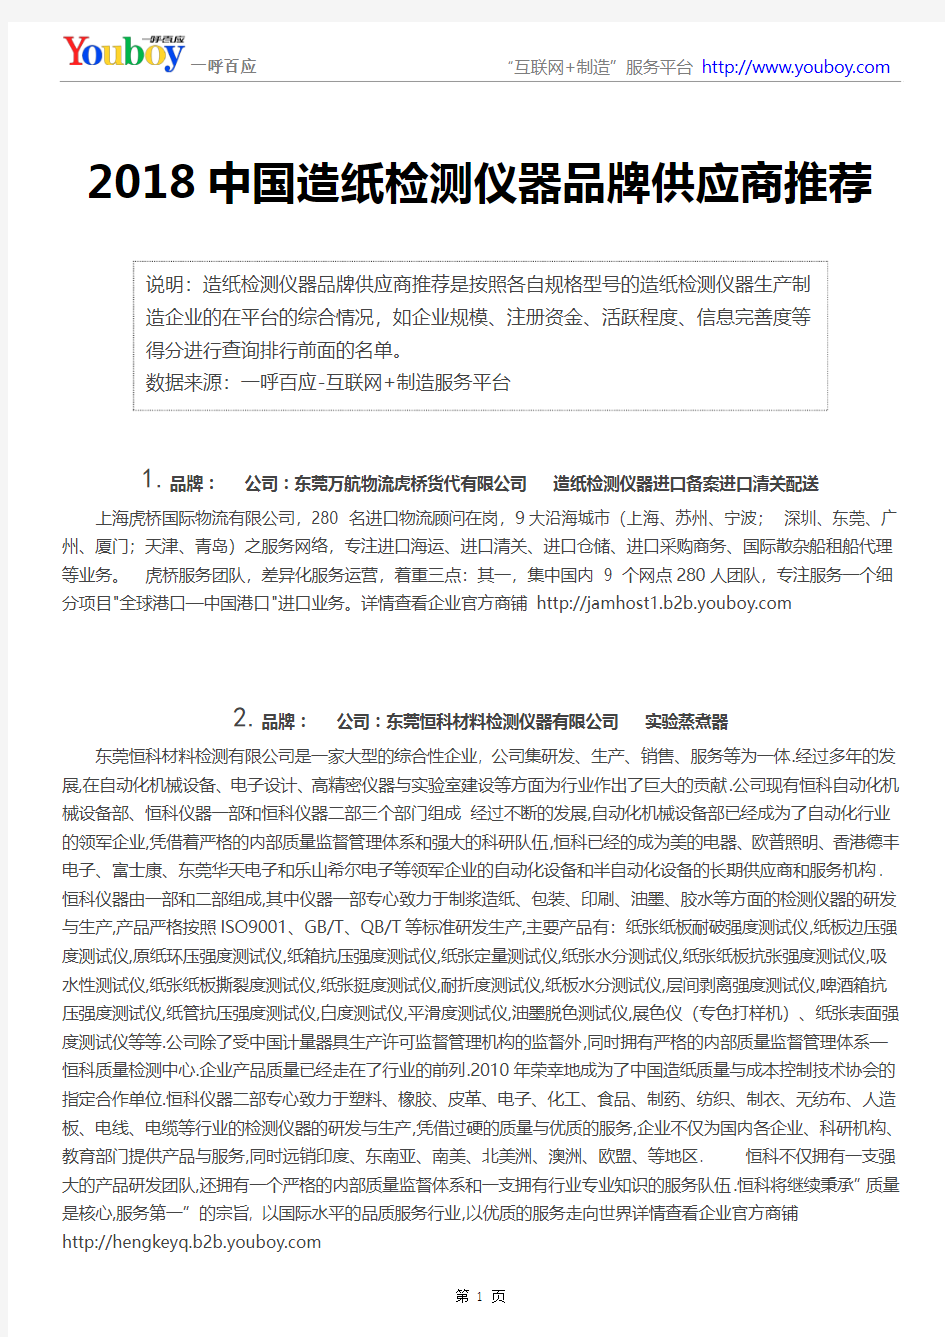 2018中国造纸检测仪器品牌供应商推荐